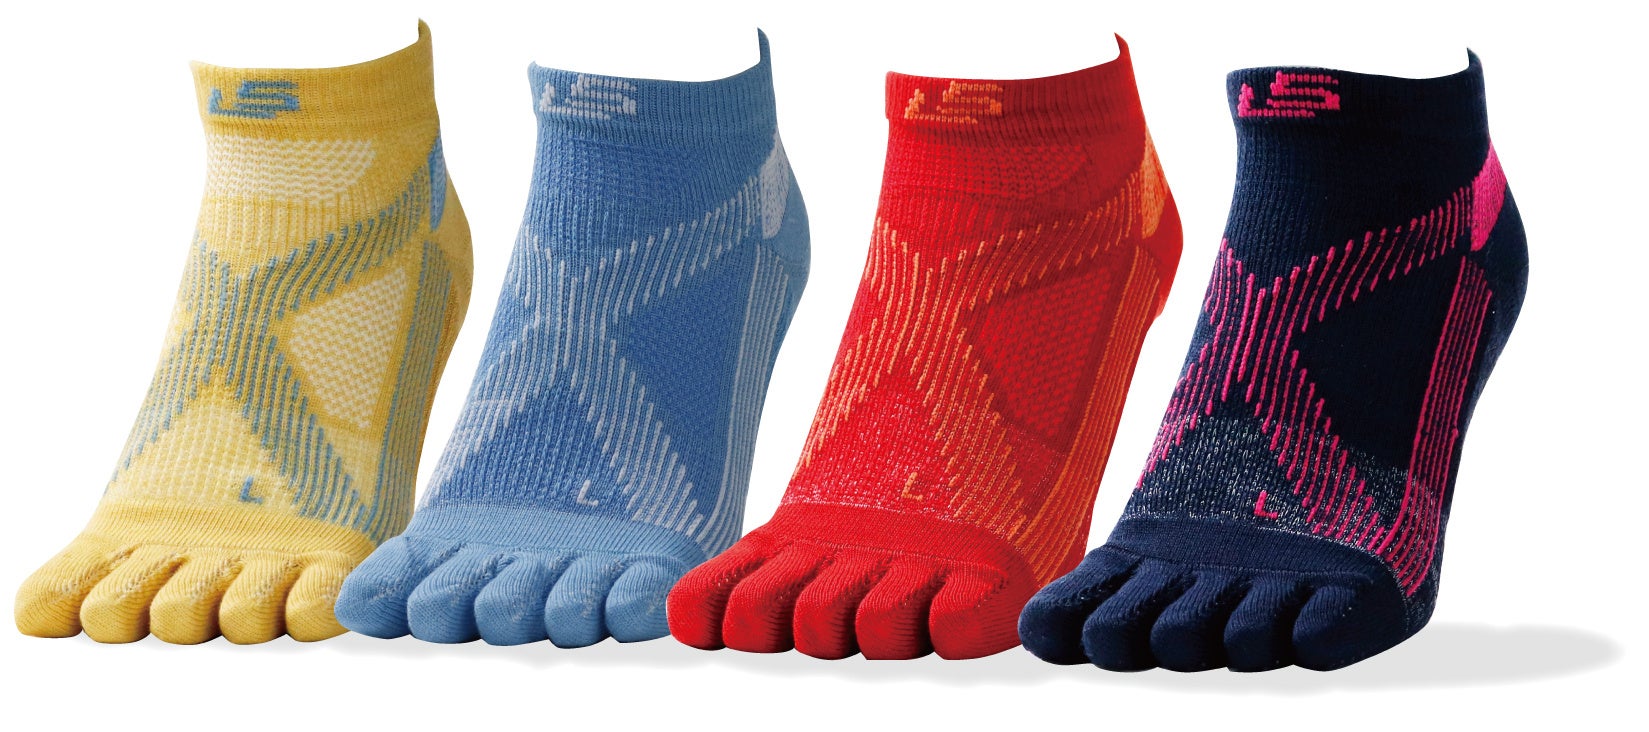 ランナーの走りを支えて足も守る独自のハイブリッド構造靴下専門メーカーの研究開発から誕生した革新の“走り専用靴下”発売